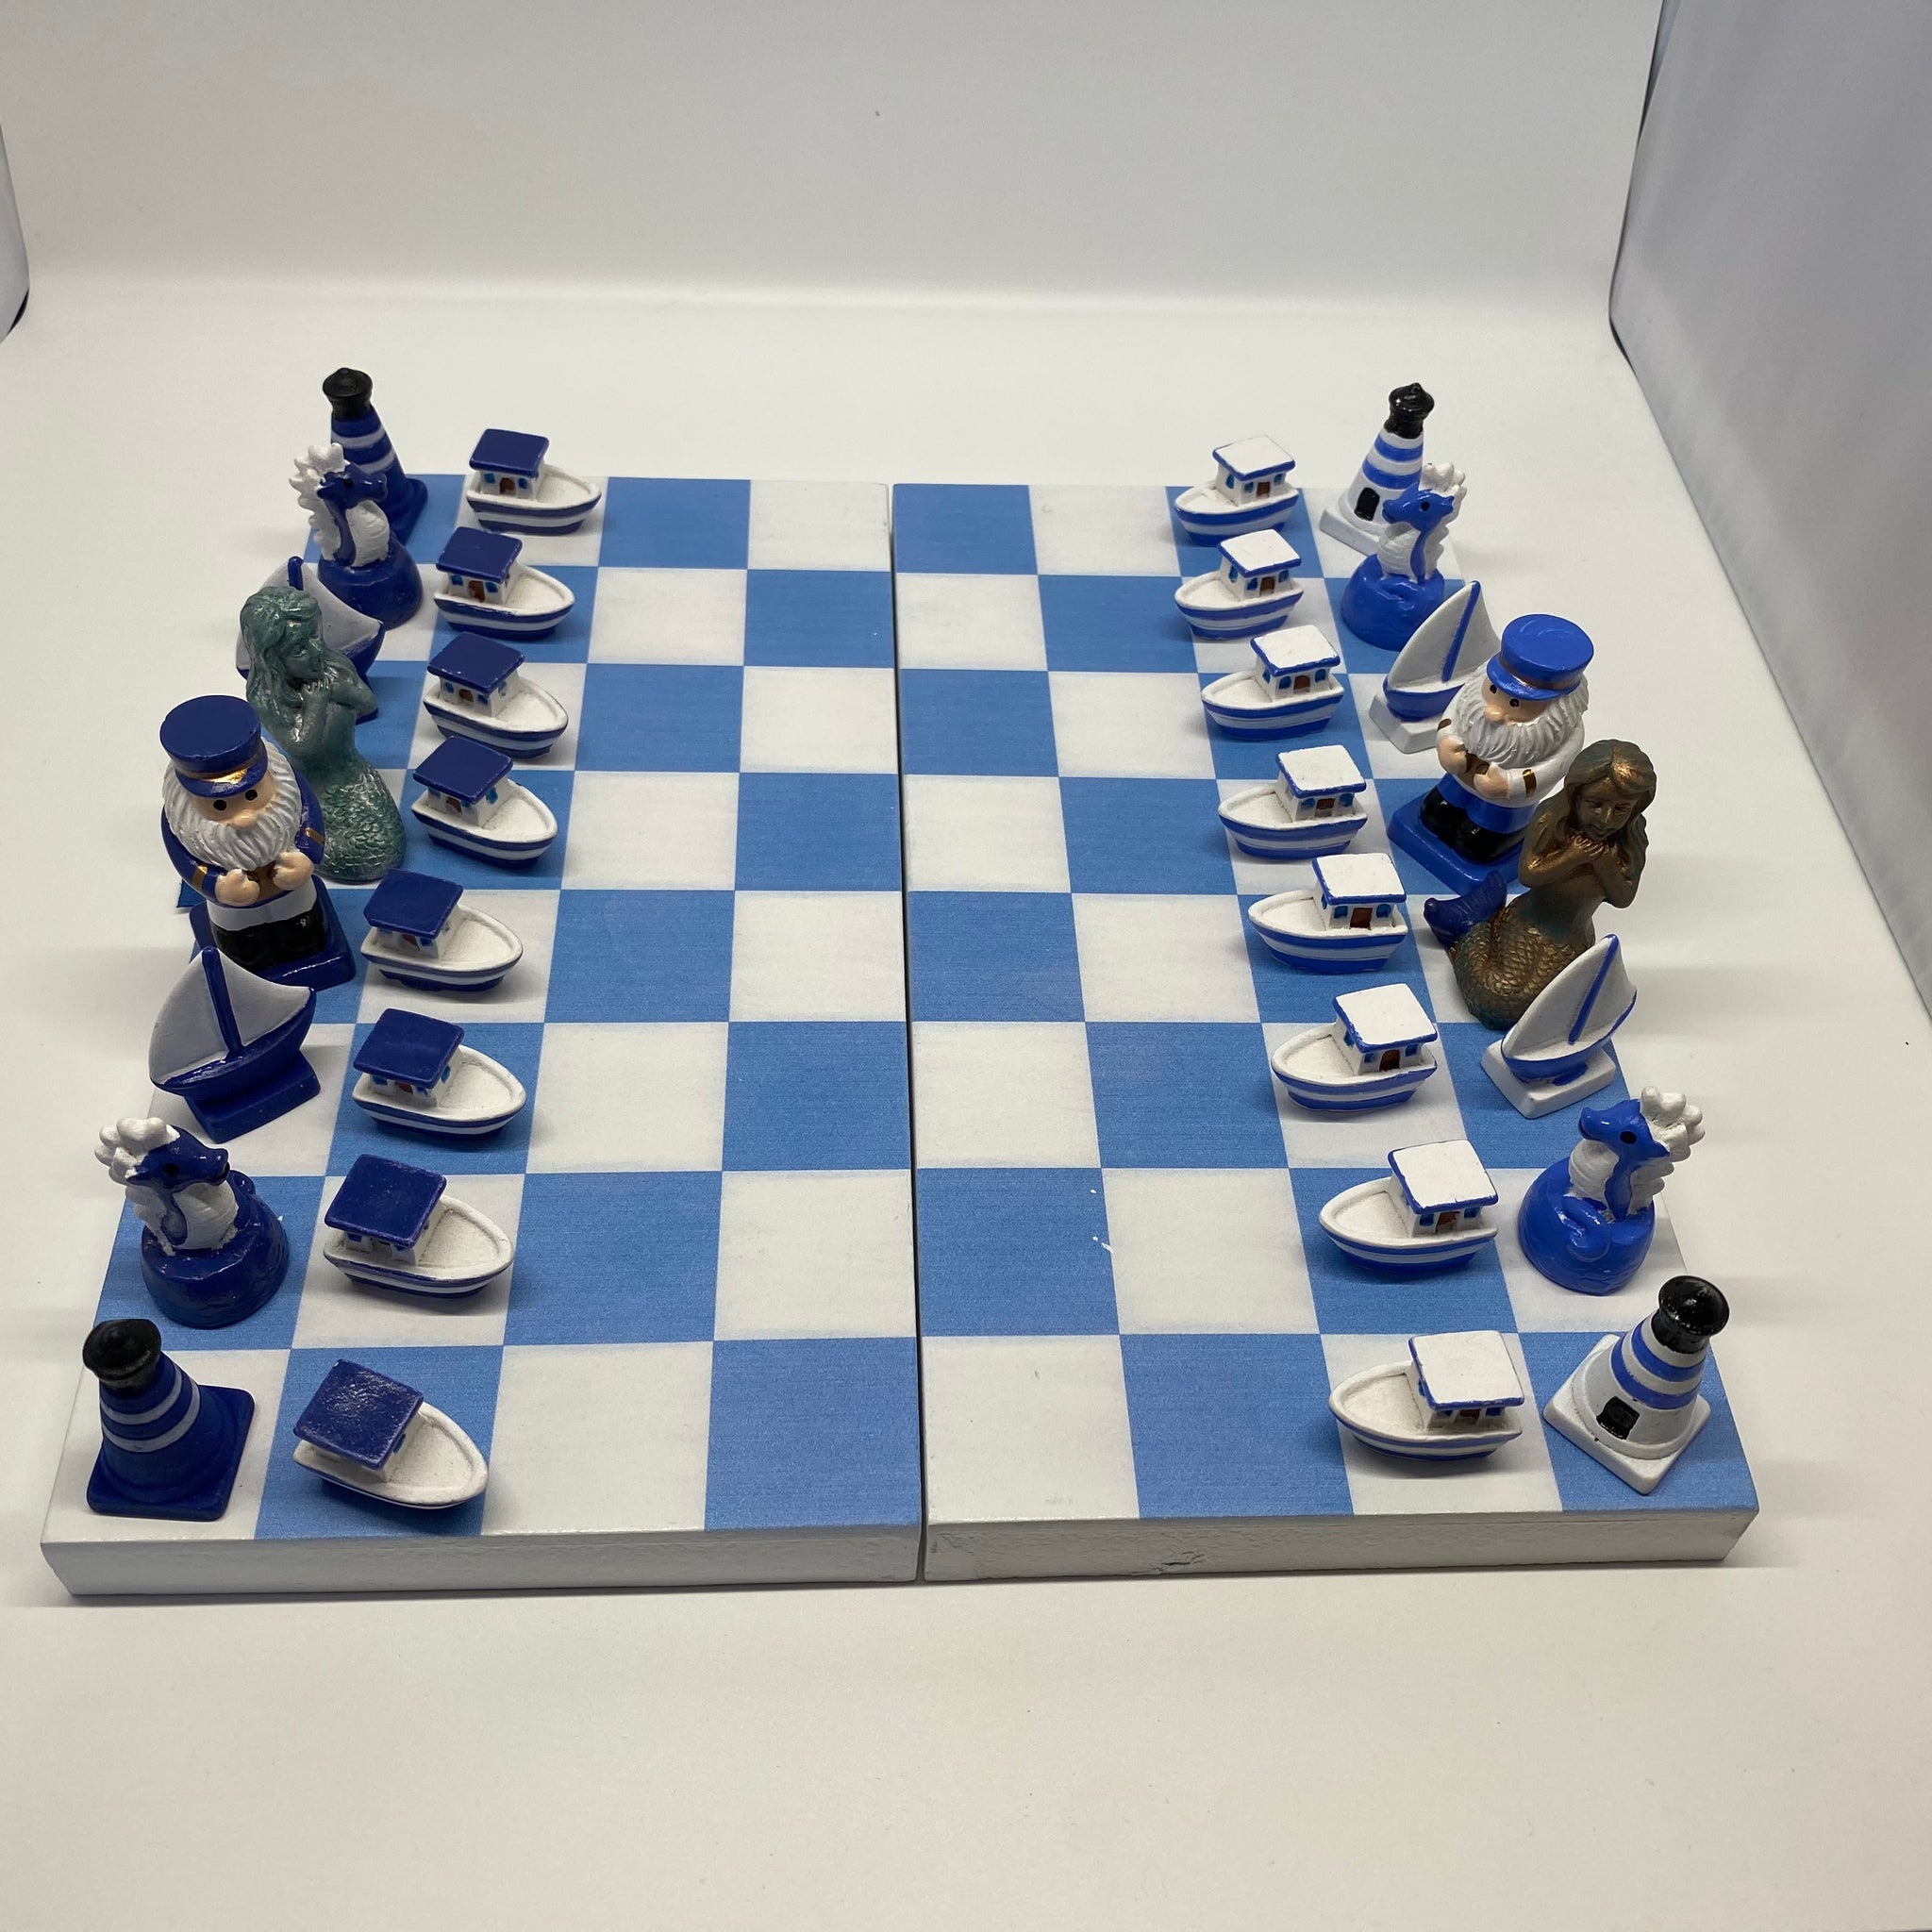 schach 2 spieler online